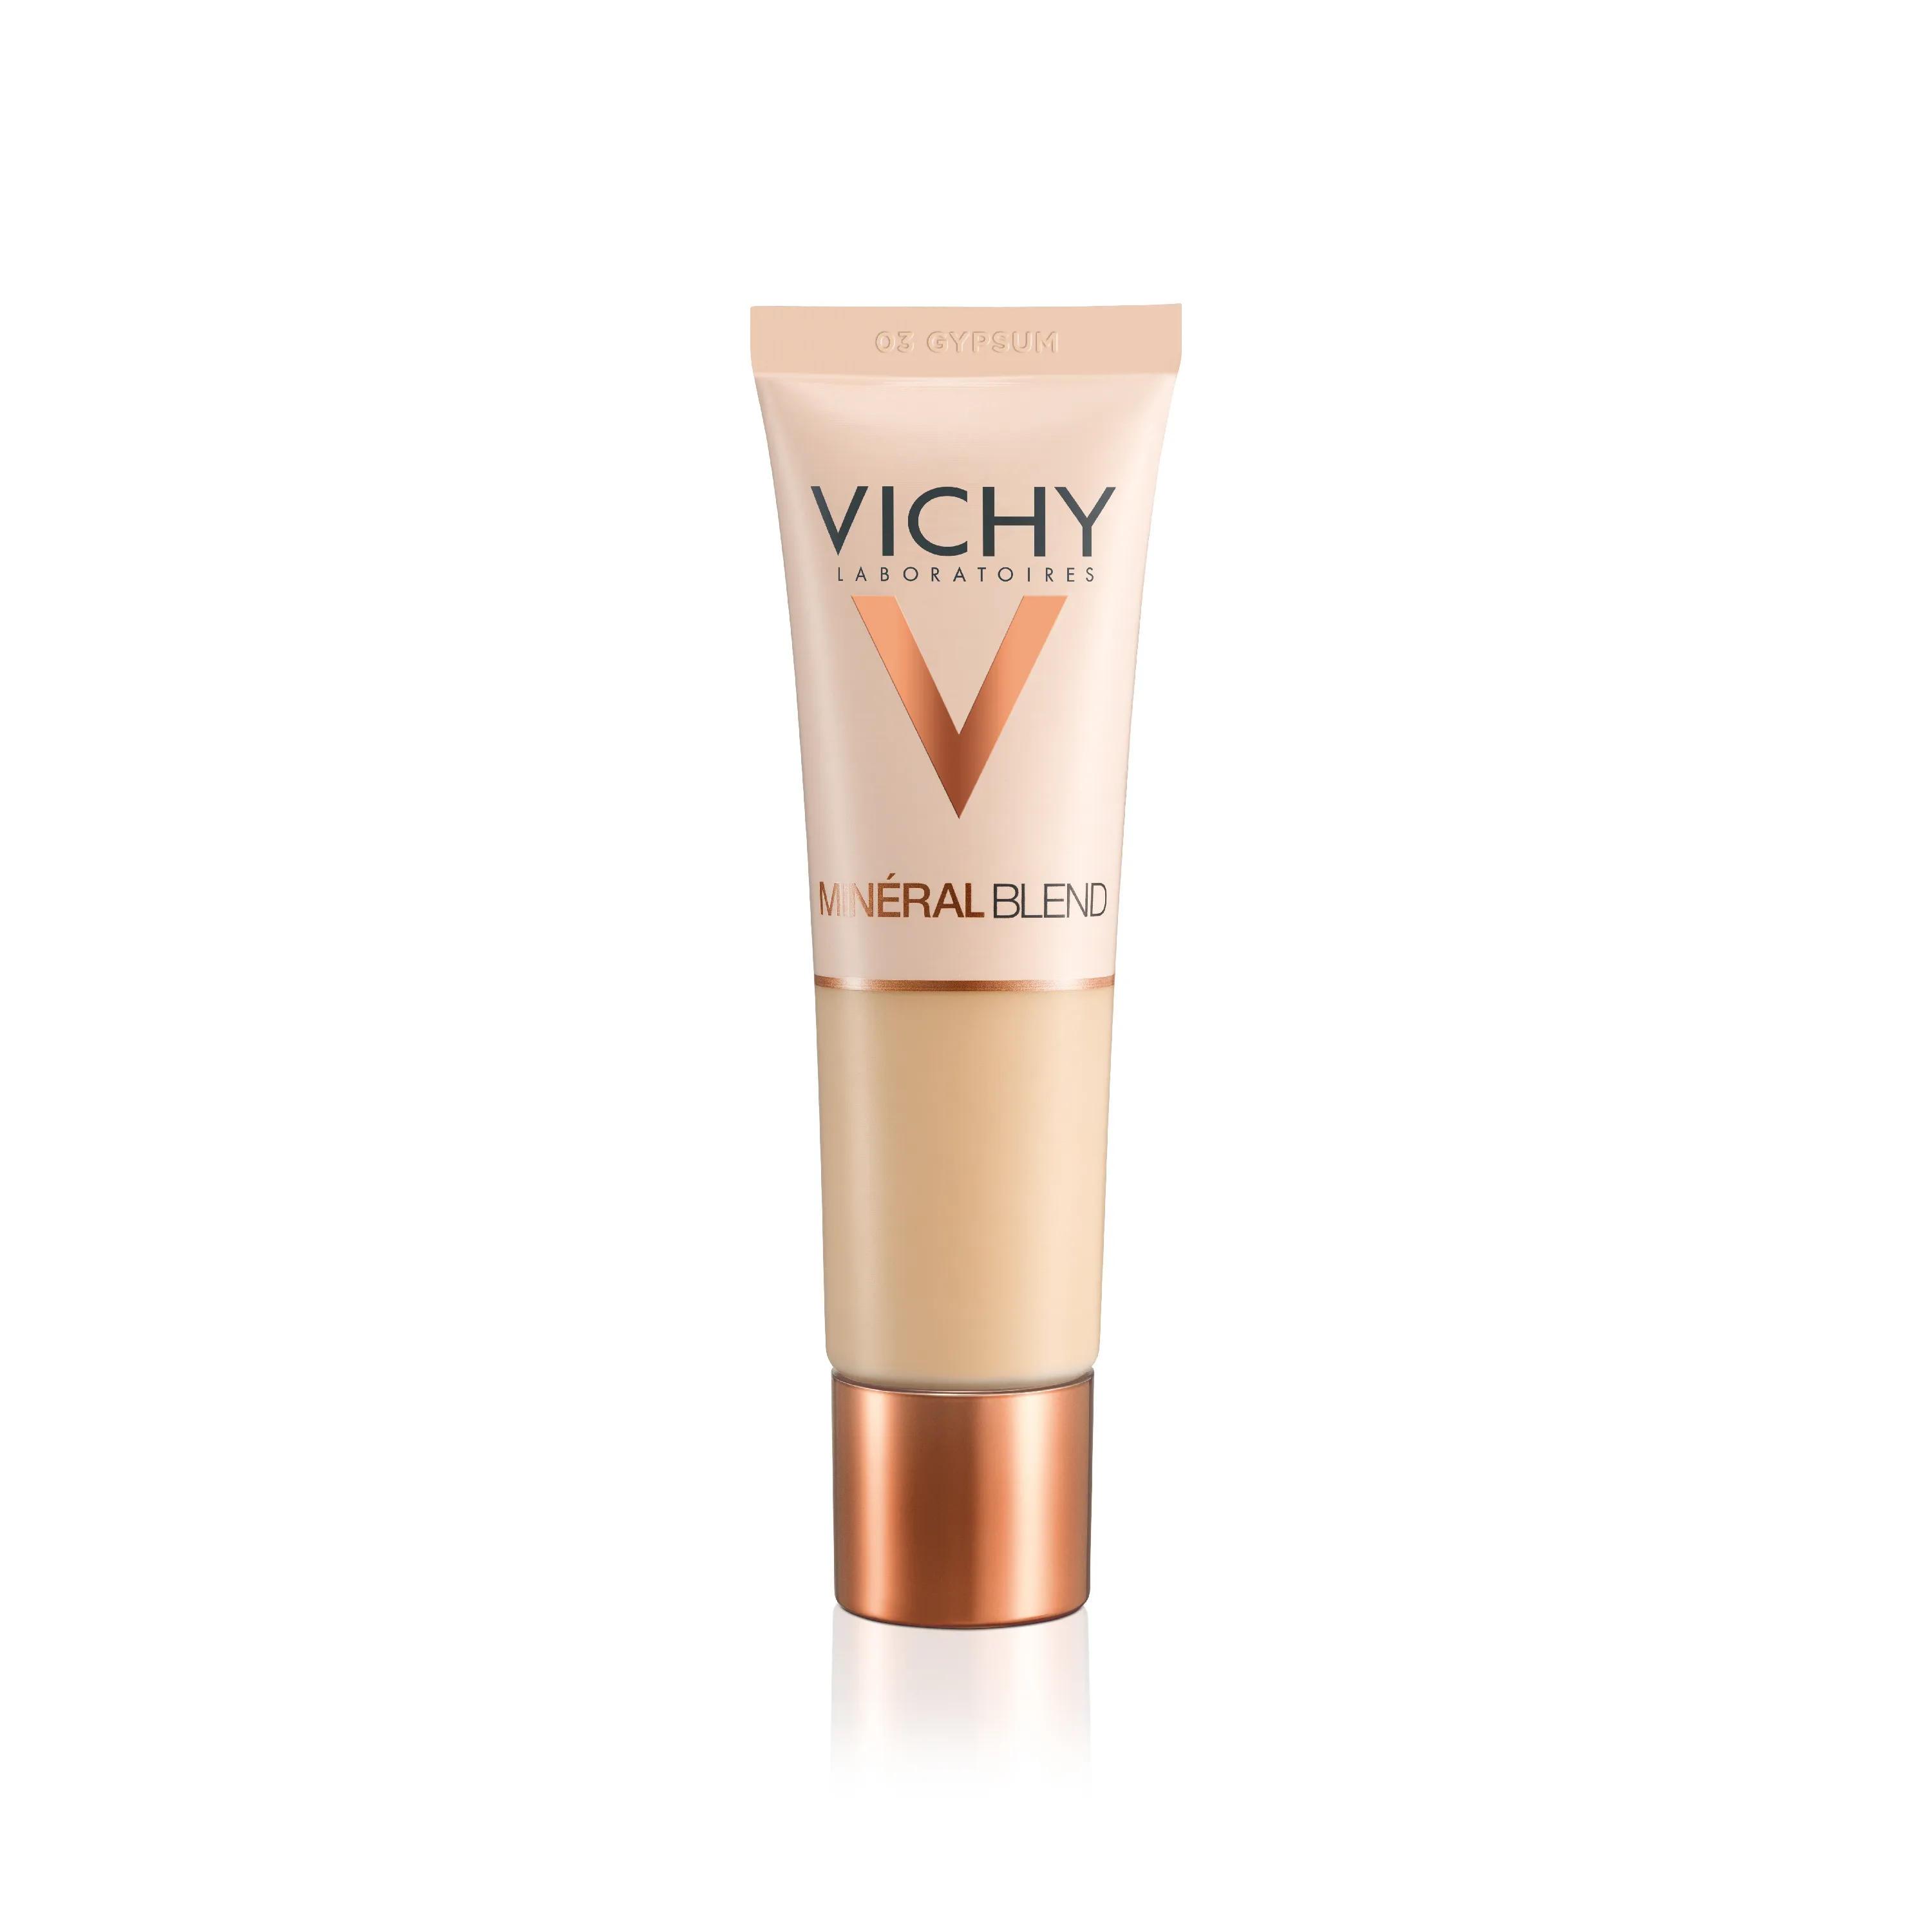 Vichy Mineralblend, podkład nawilżający, nr 03 gypsum, 30 ml